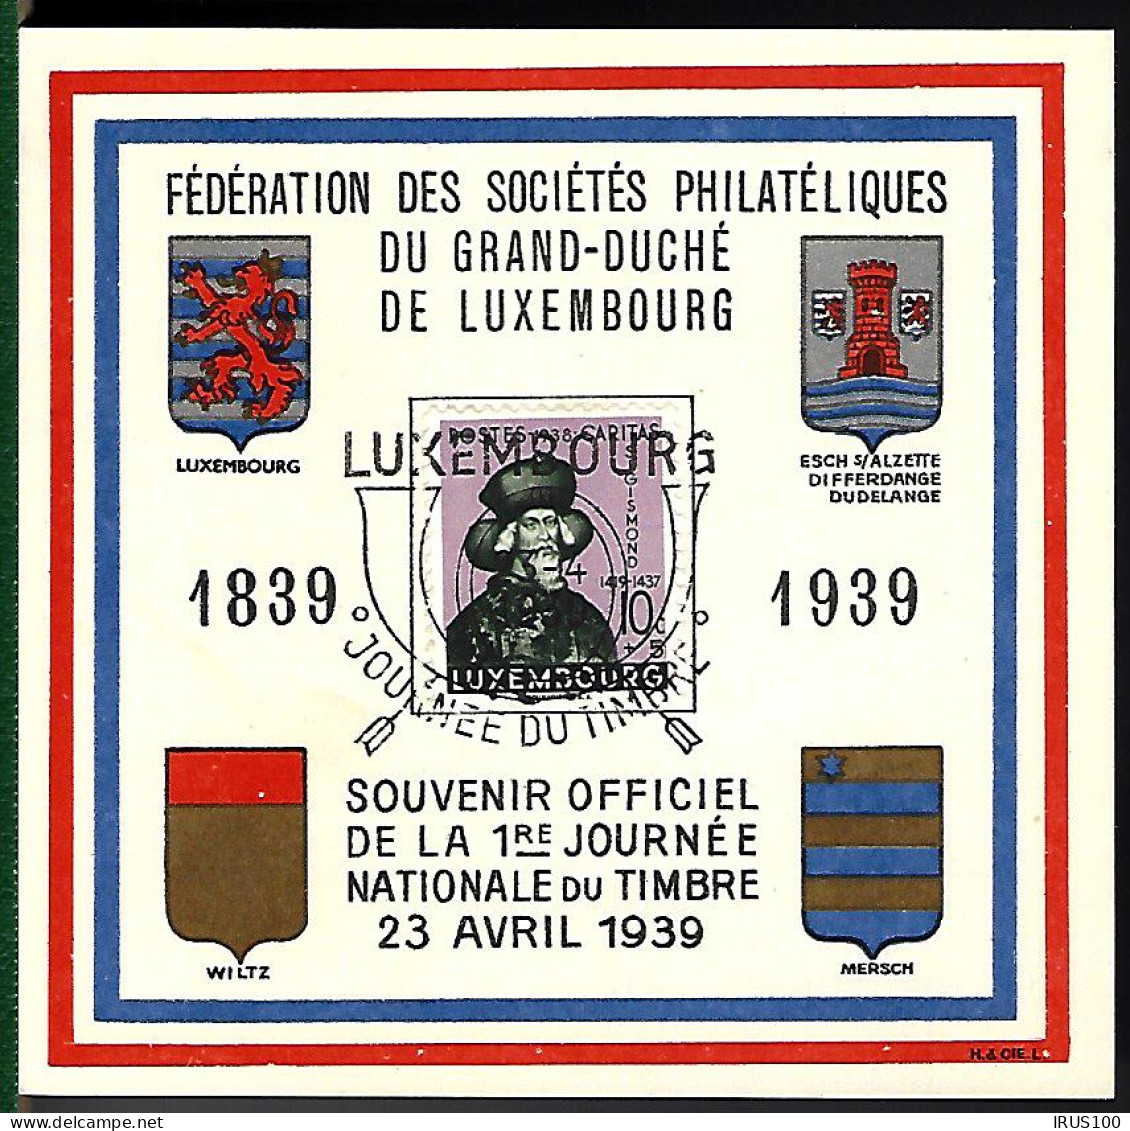 FÊTE DU TIMBRE - 1939 - LUXEMBOURG - Commemoration Cards